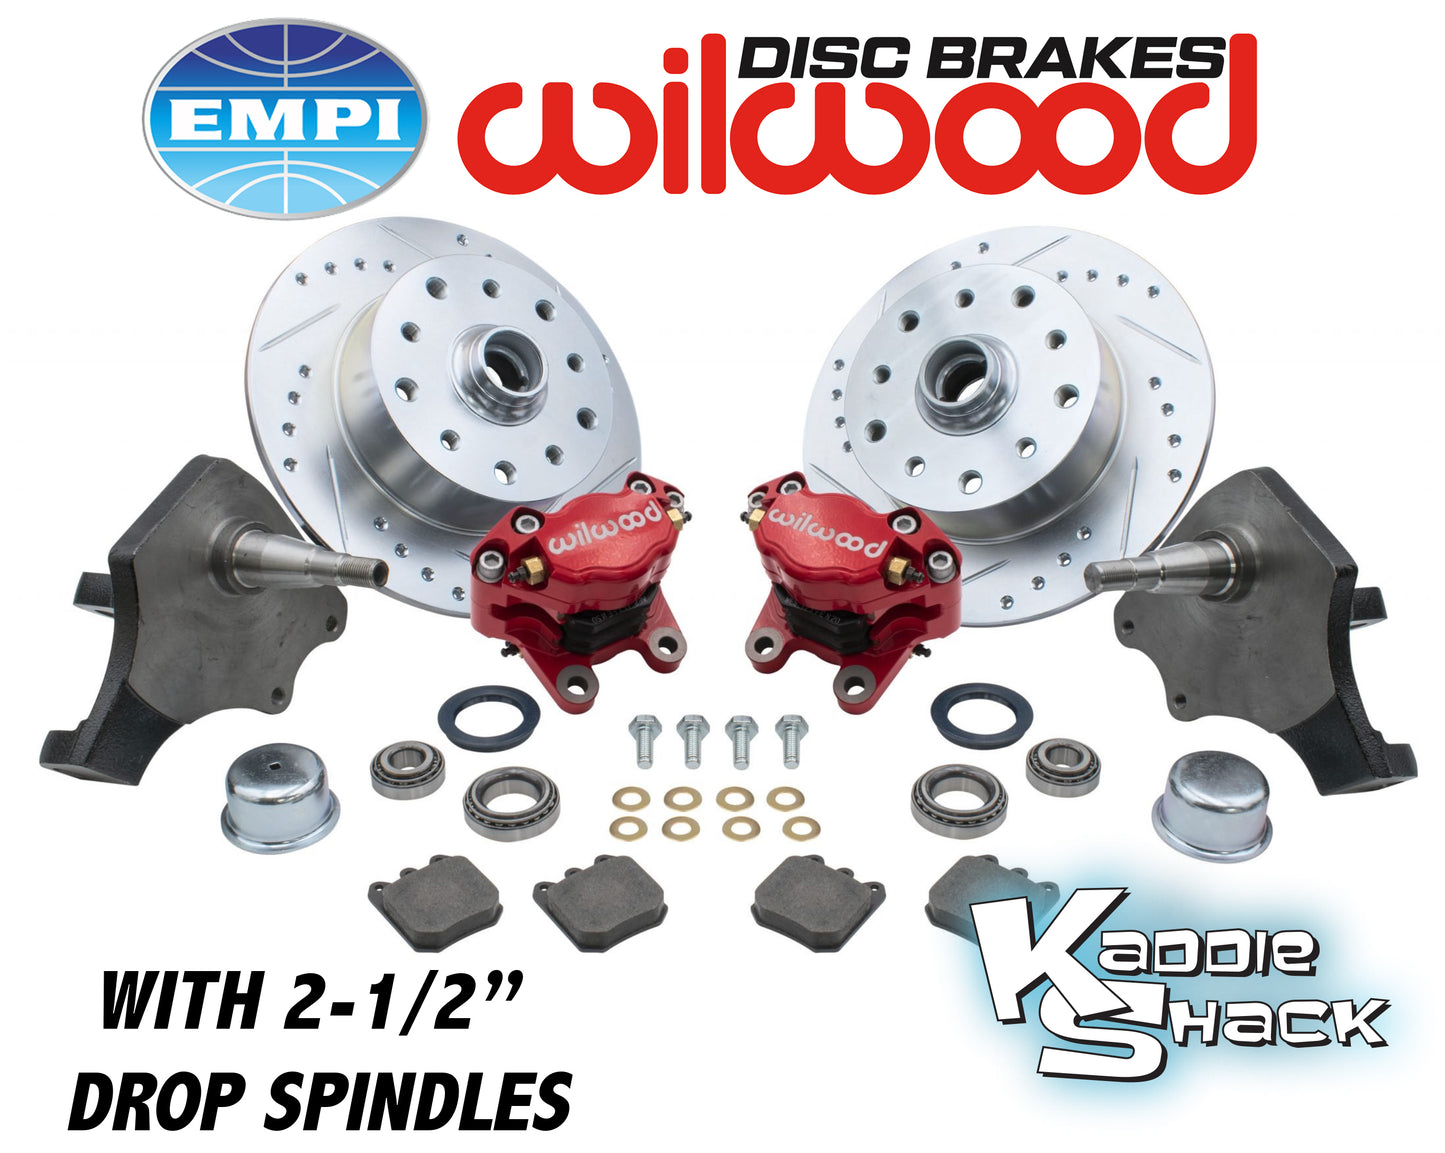 Wilwood Brakes w/ 2-1/2" Drop Spindles, Porsche/Chev, BJ Red